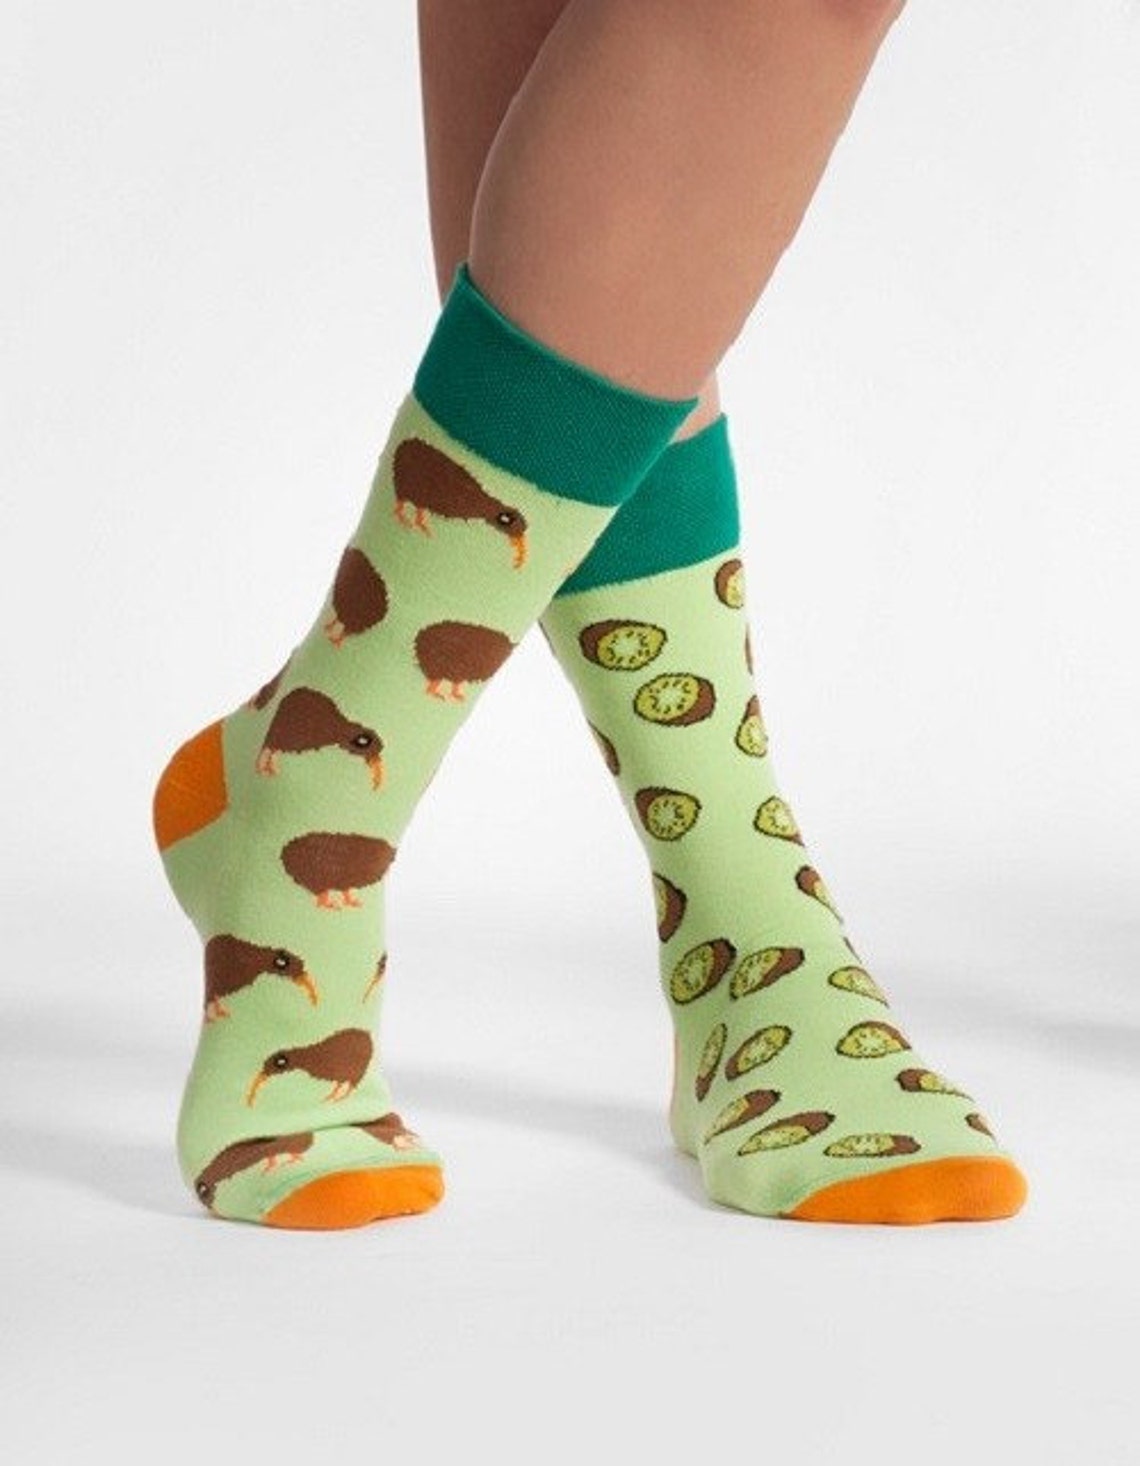 Kiwi Socks Men Socks Colorful Socks Cool Socks - Etsy